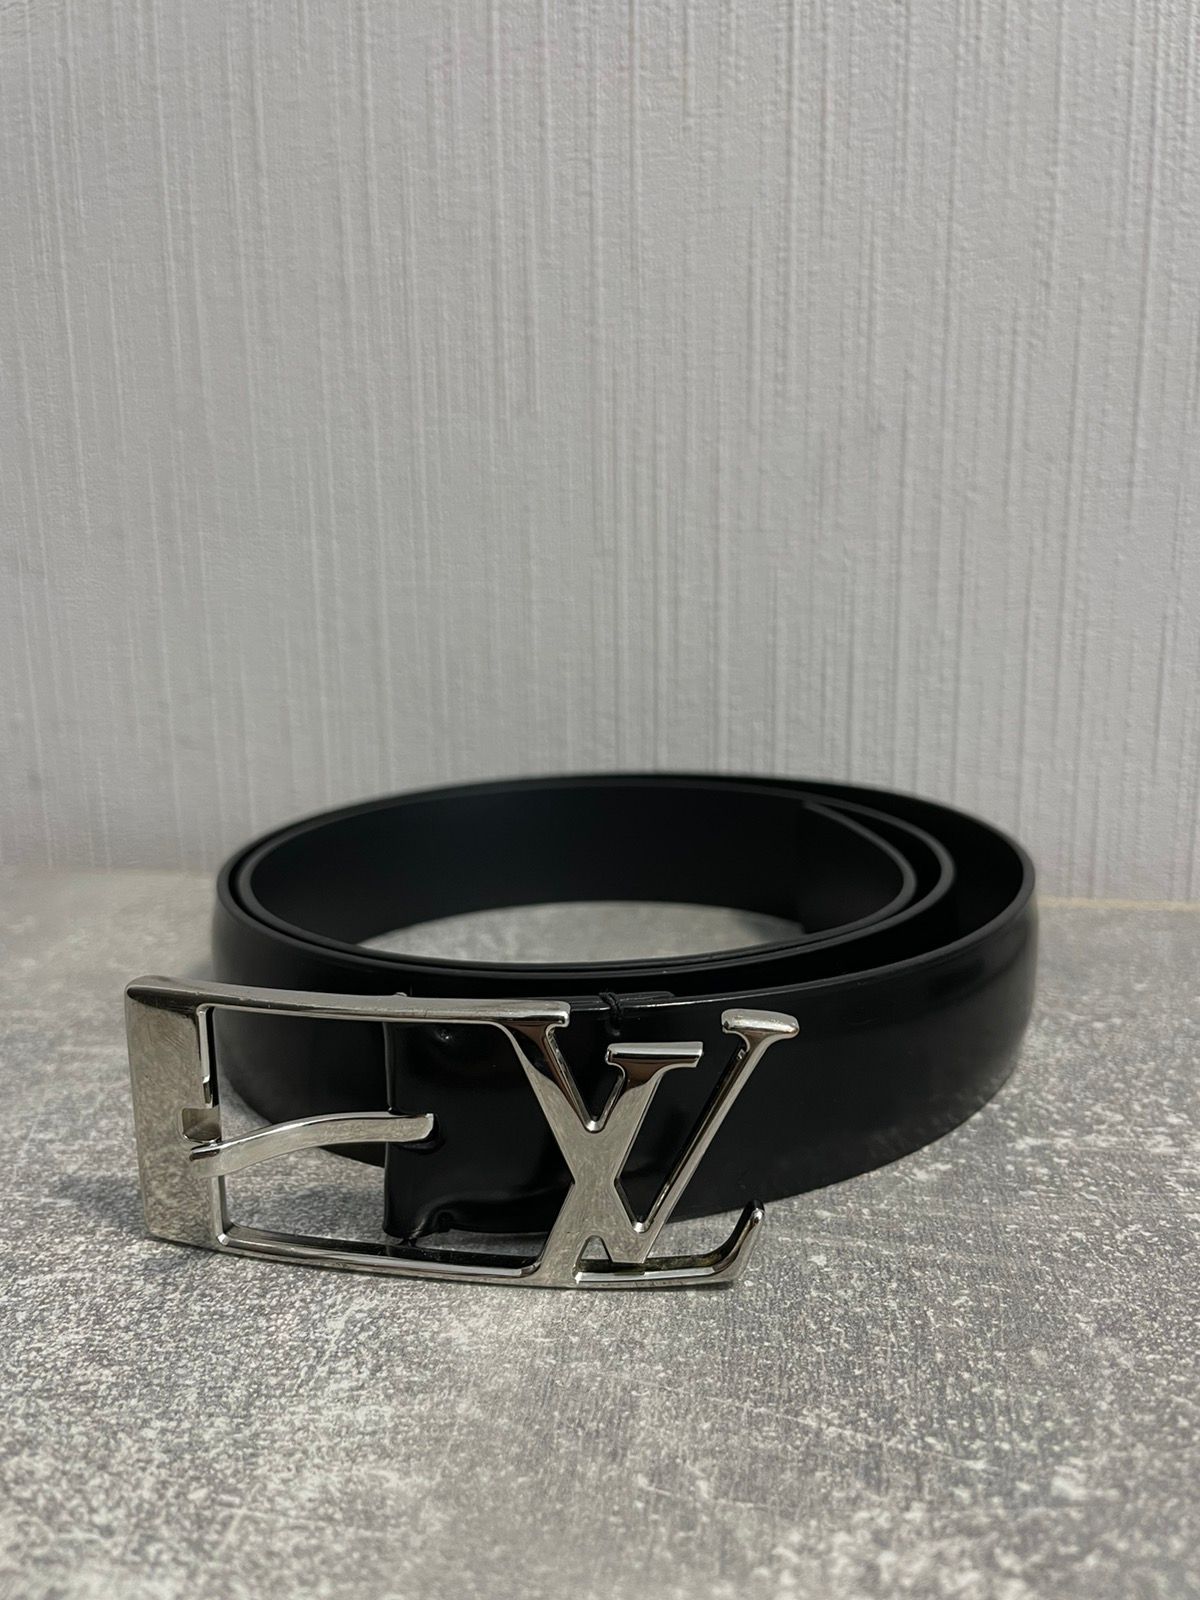 Louis Vuitton Men's Belts for sale